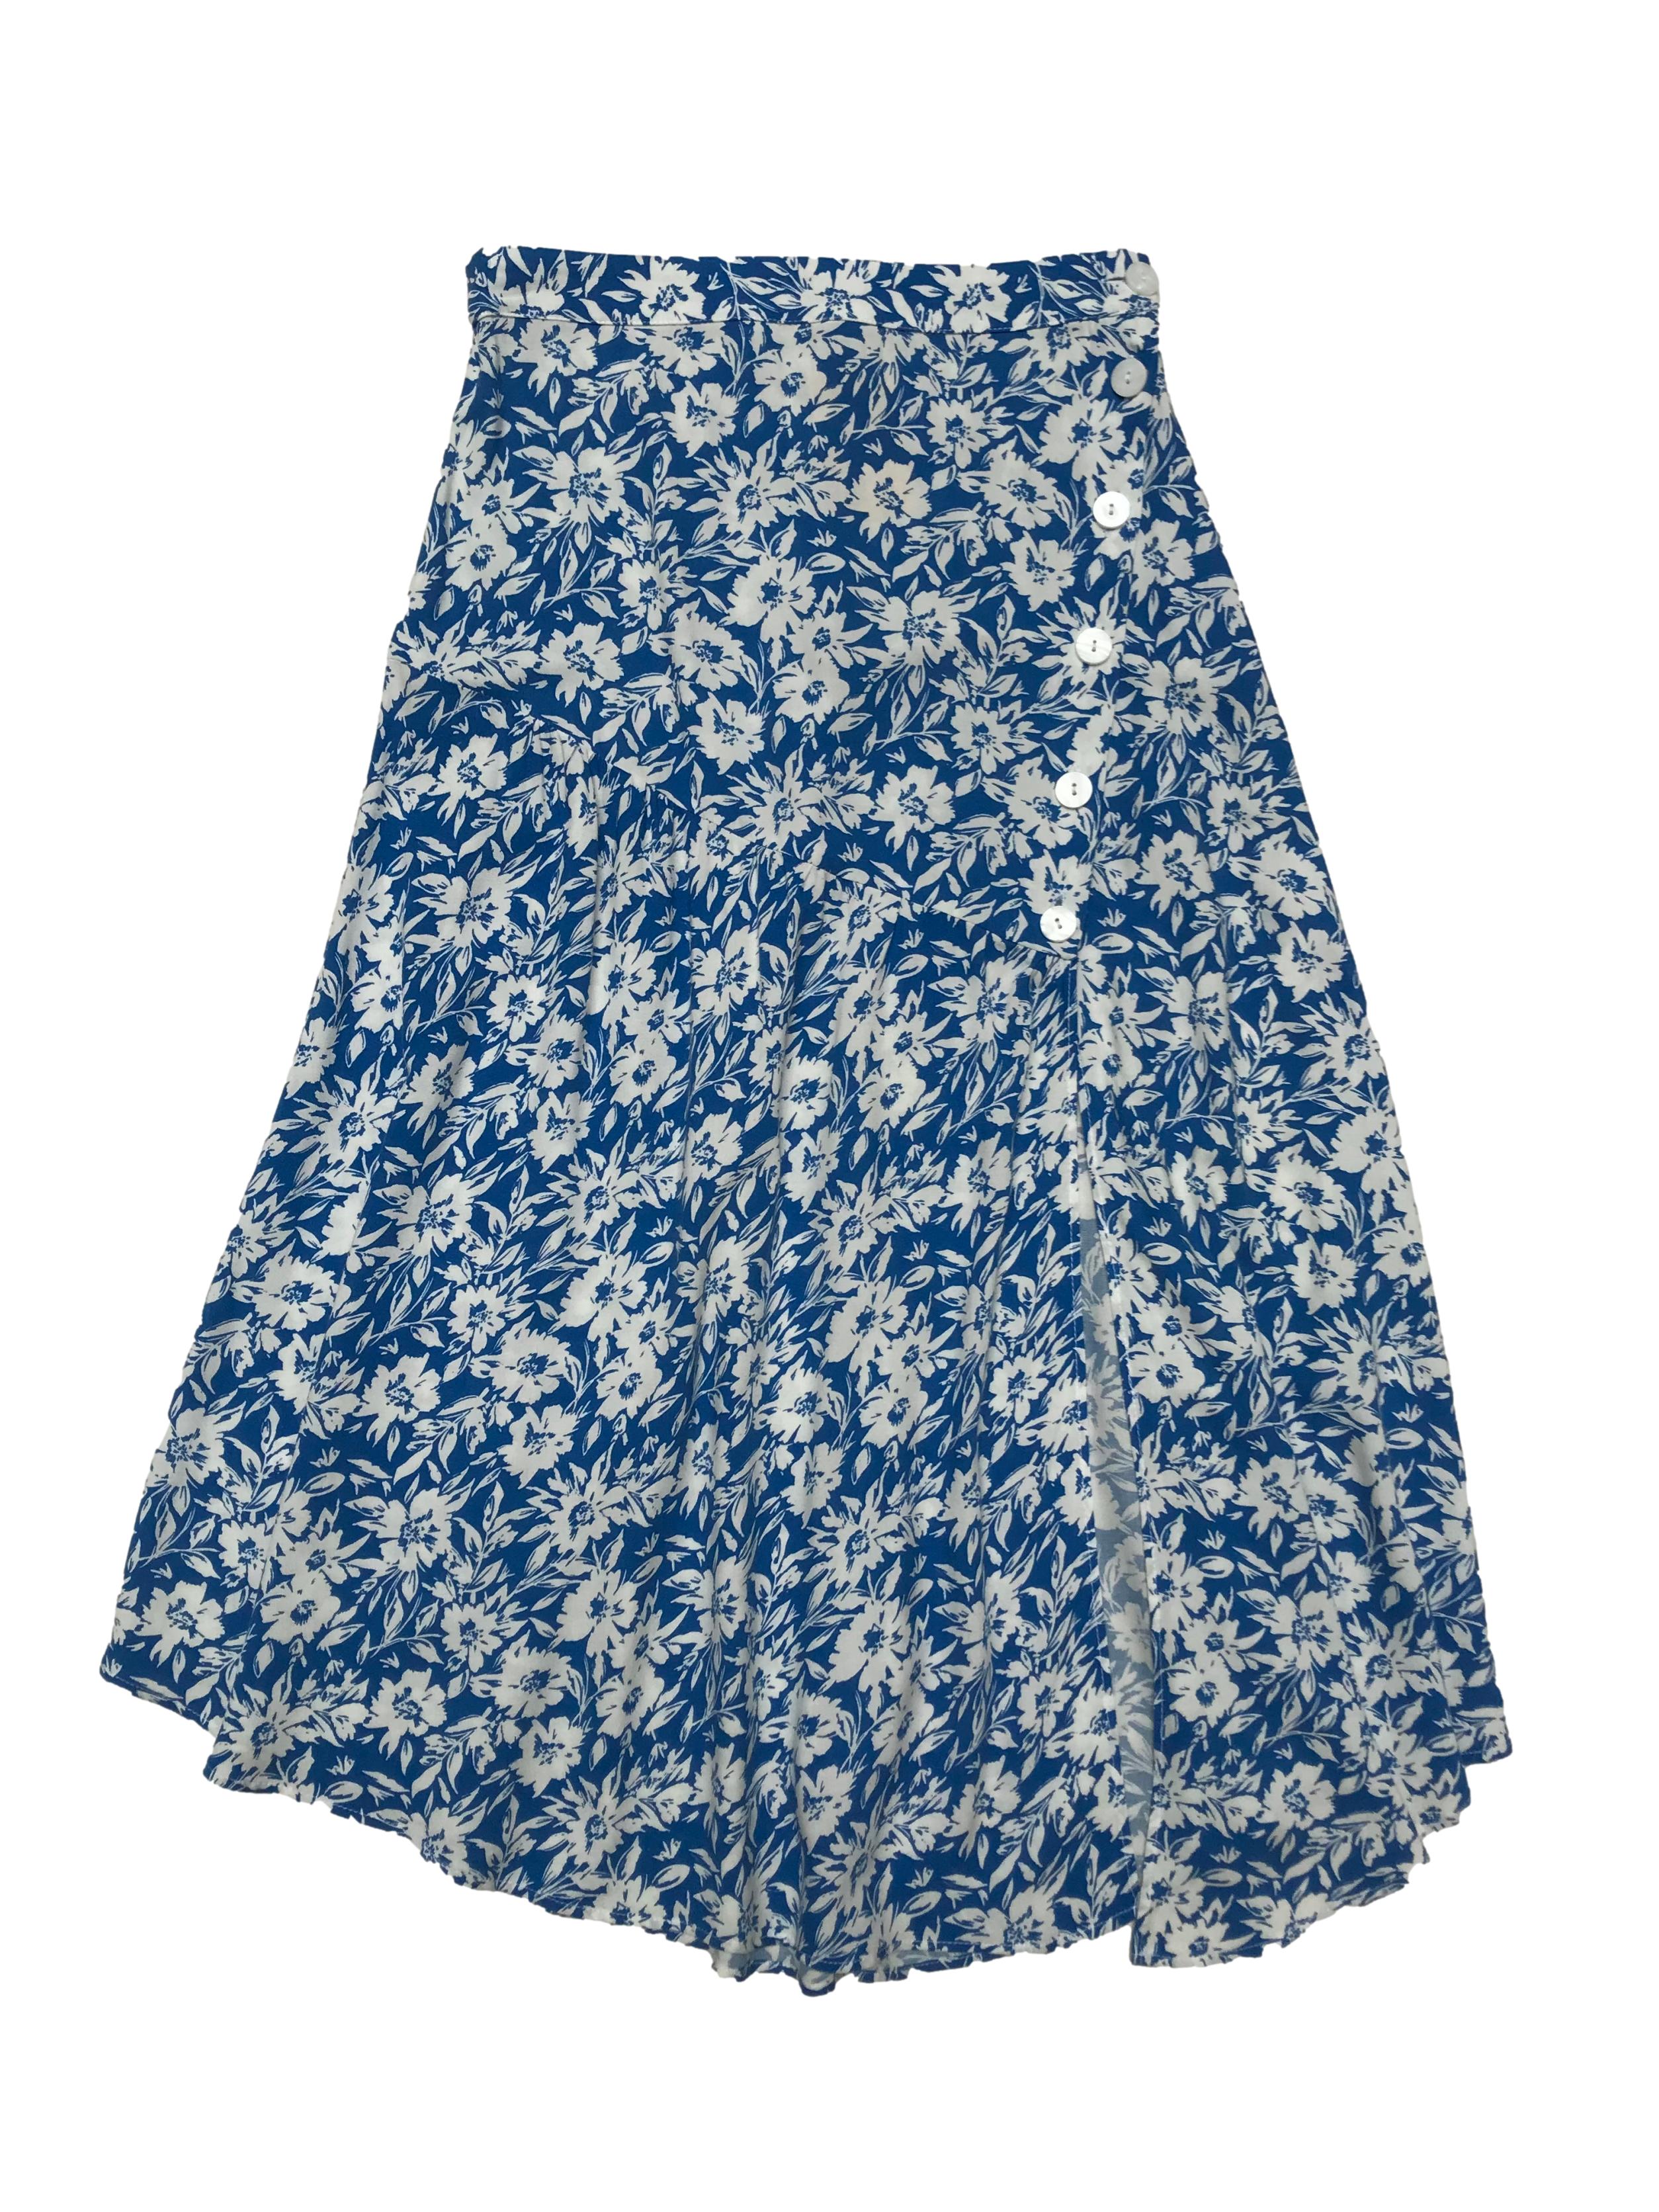 Falda midi Zara, de tela viscosa fresca azul con flores blancas, botones y abertura laterales, largo asimétrico. Cintura 66cm Largo 75-85cm